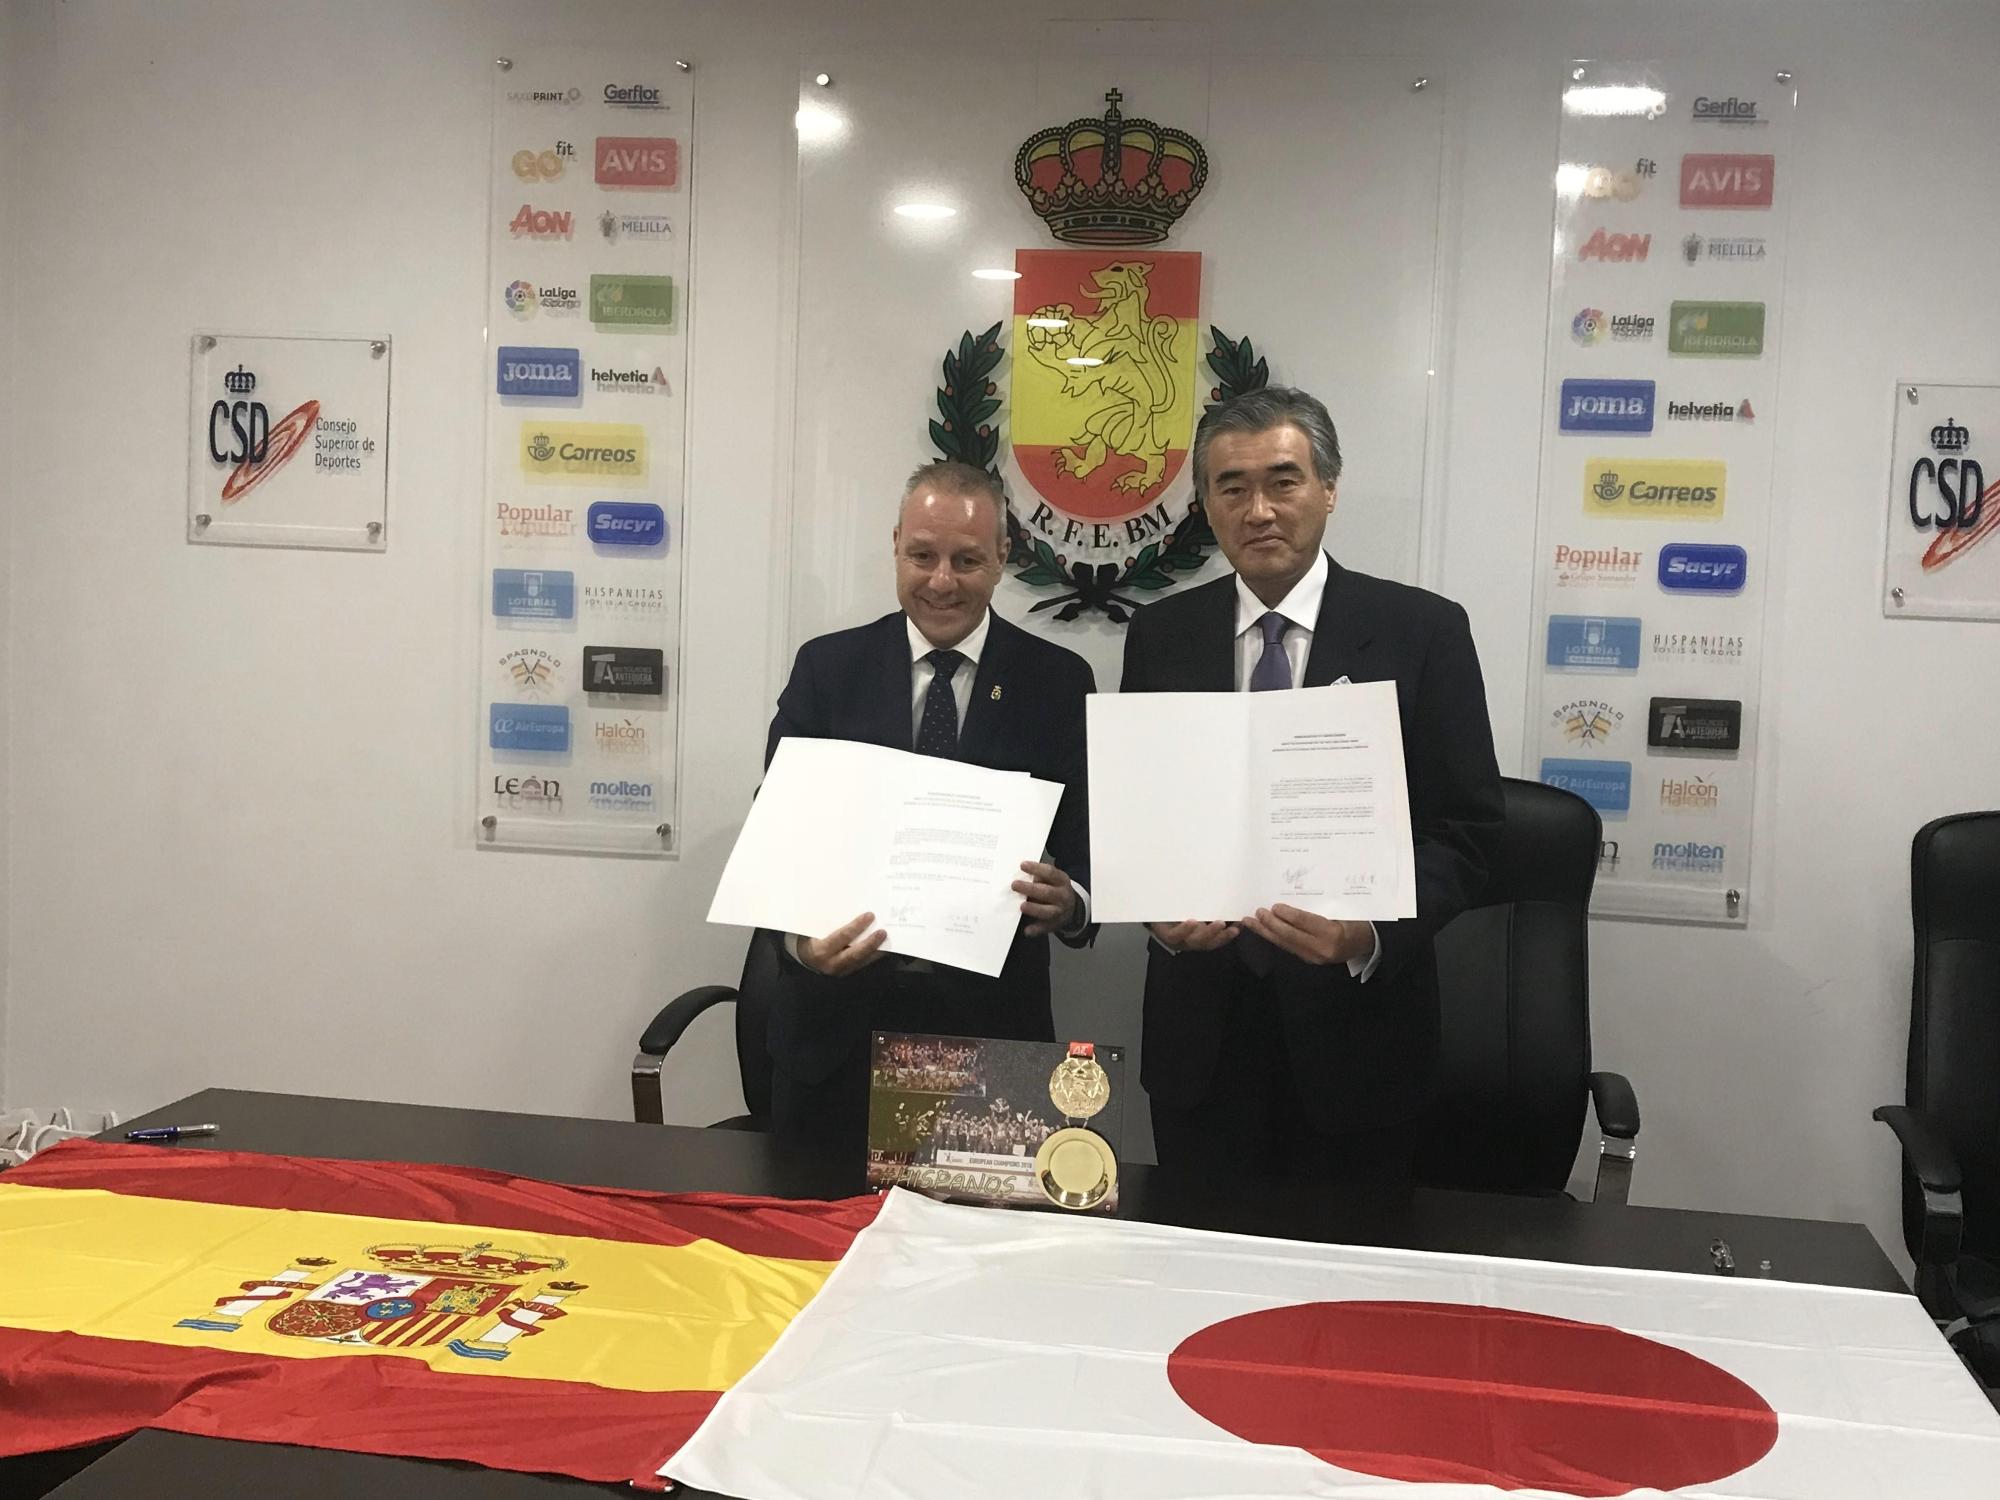 日本とスペインの国旗を机に飾り締結した合宿の覚書を手にもちならんでいる大久保市長と県・市の担当者と王立スペインハンドボール連盟フランシスコ・ブラスケス会長の写真